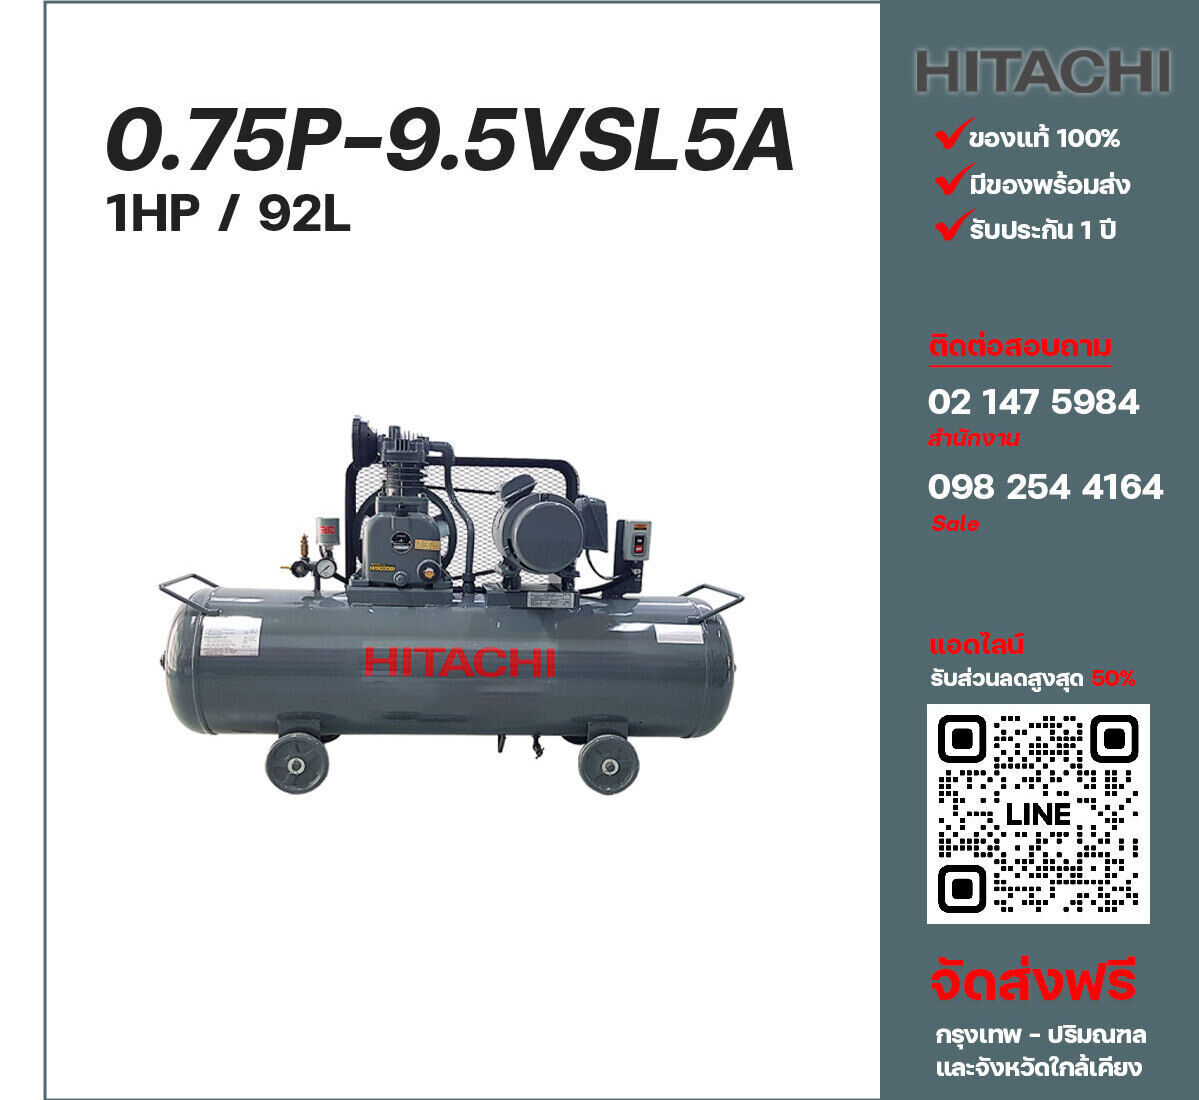 ปั๊มลมฮิตาชิ HITACHI รุ่นใช้น้ำมัน 0.75P-9.5VSL5A220V ปั๊มลมลูกสูบ ขนาด 1 สูบ 1 แรงม้า 92 ลิตร Hitachi พร้อมมอเตอร์ Hitachi ไฟ 220V ส่งฟรี กรุงเทพฯ-ปริมณฑล รับประกัน 1 ปี